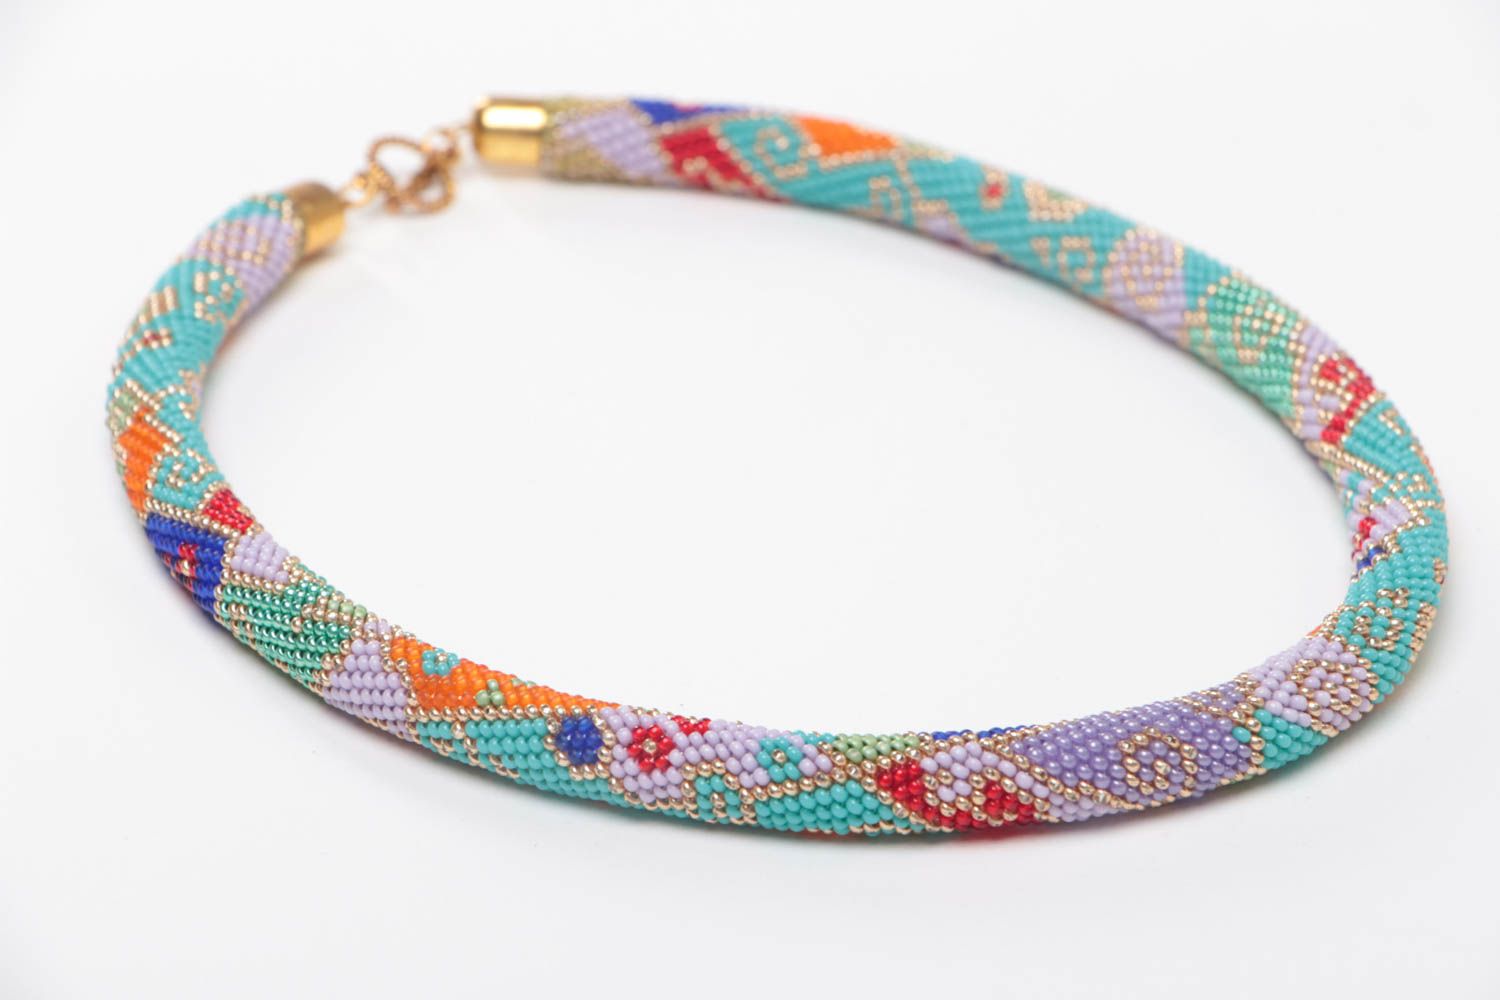 Ожерелье из бисера в форме жгута цветное стильное необычное модное ручной работы фото 3